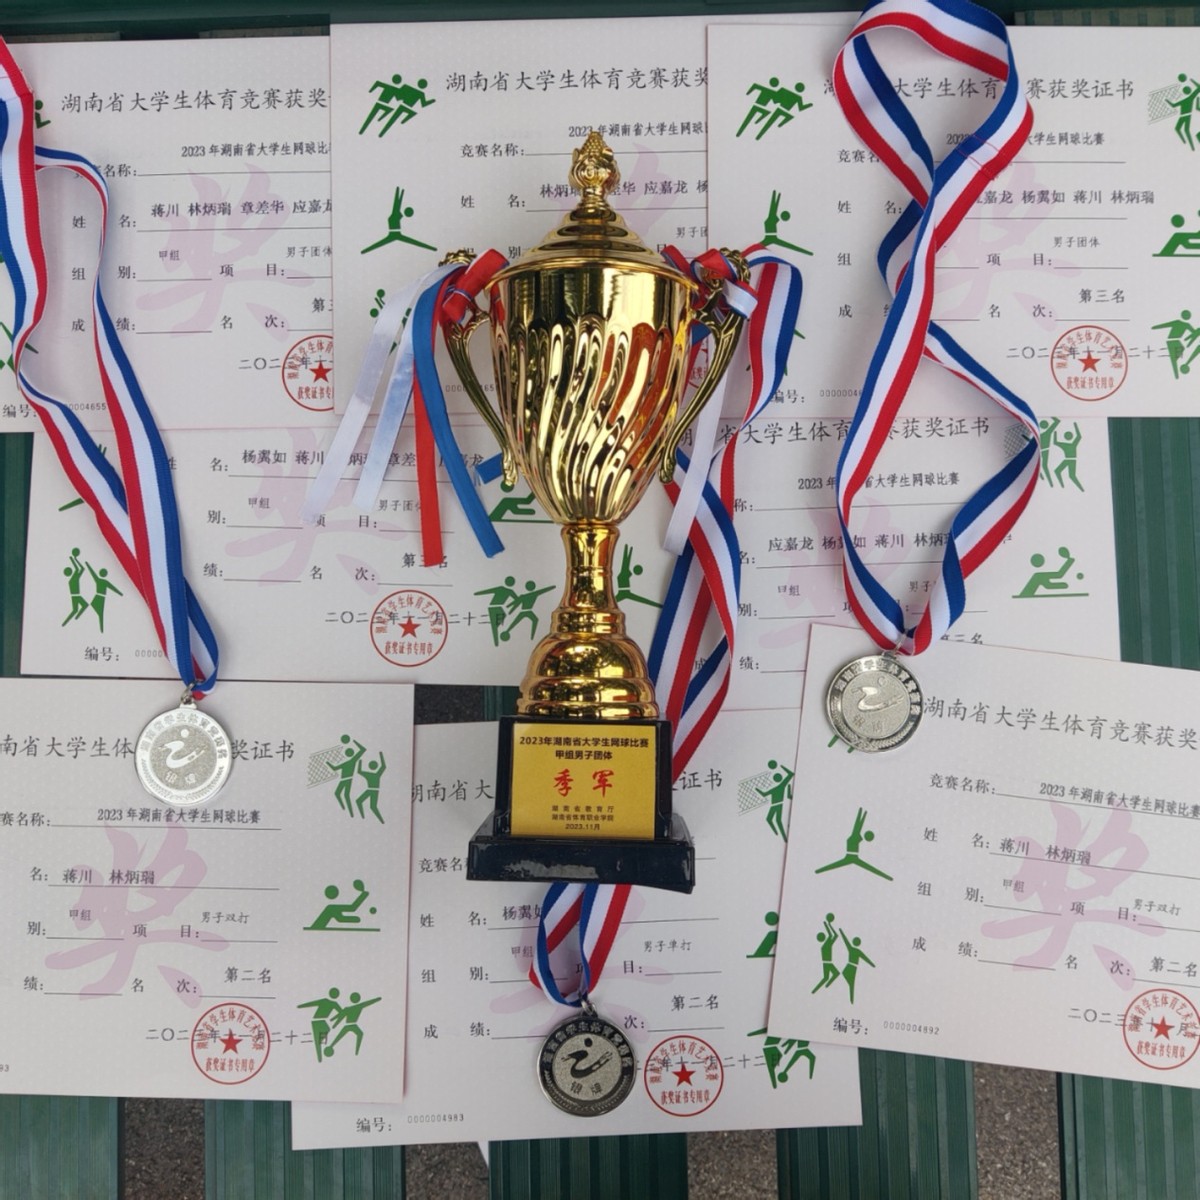 长沙理工大学在2023年湖南省大学生网球比赛中创佳绩